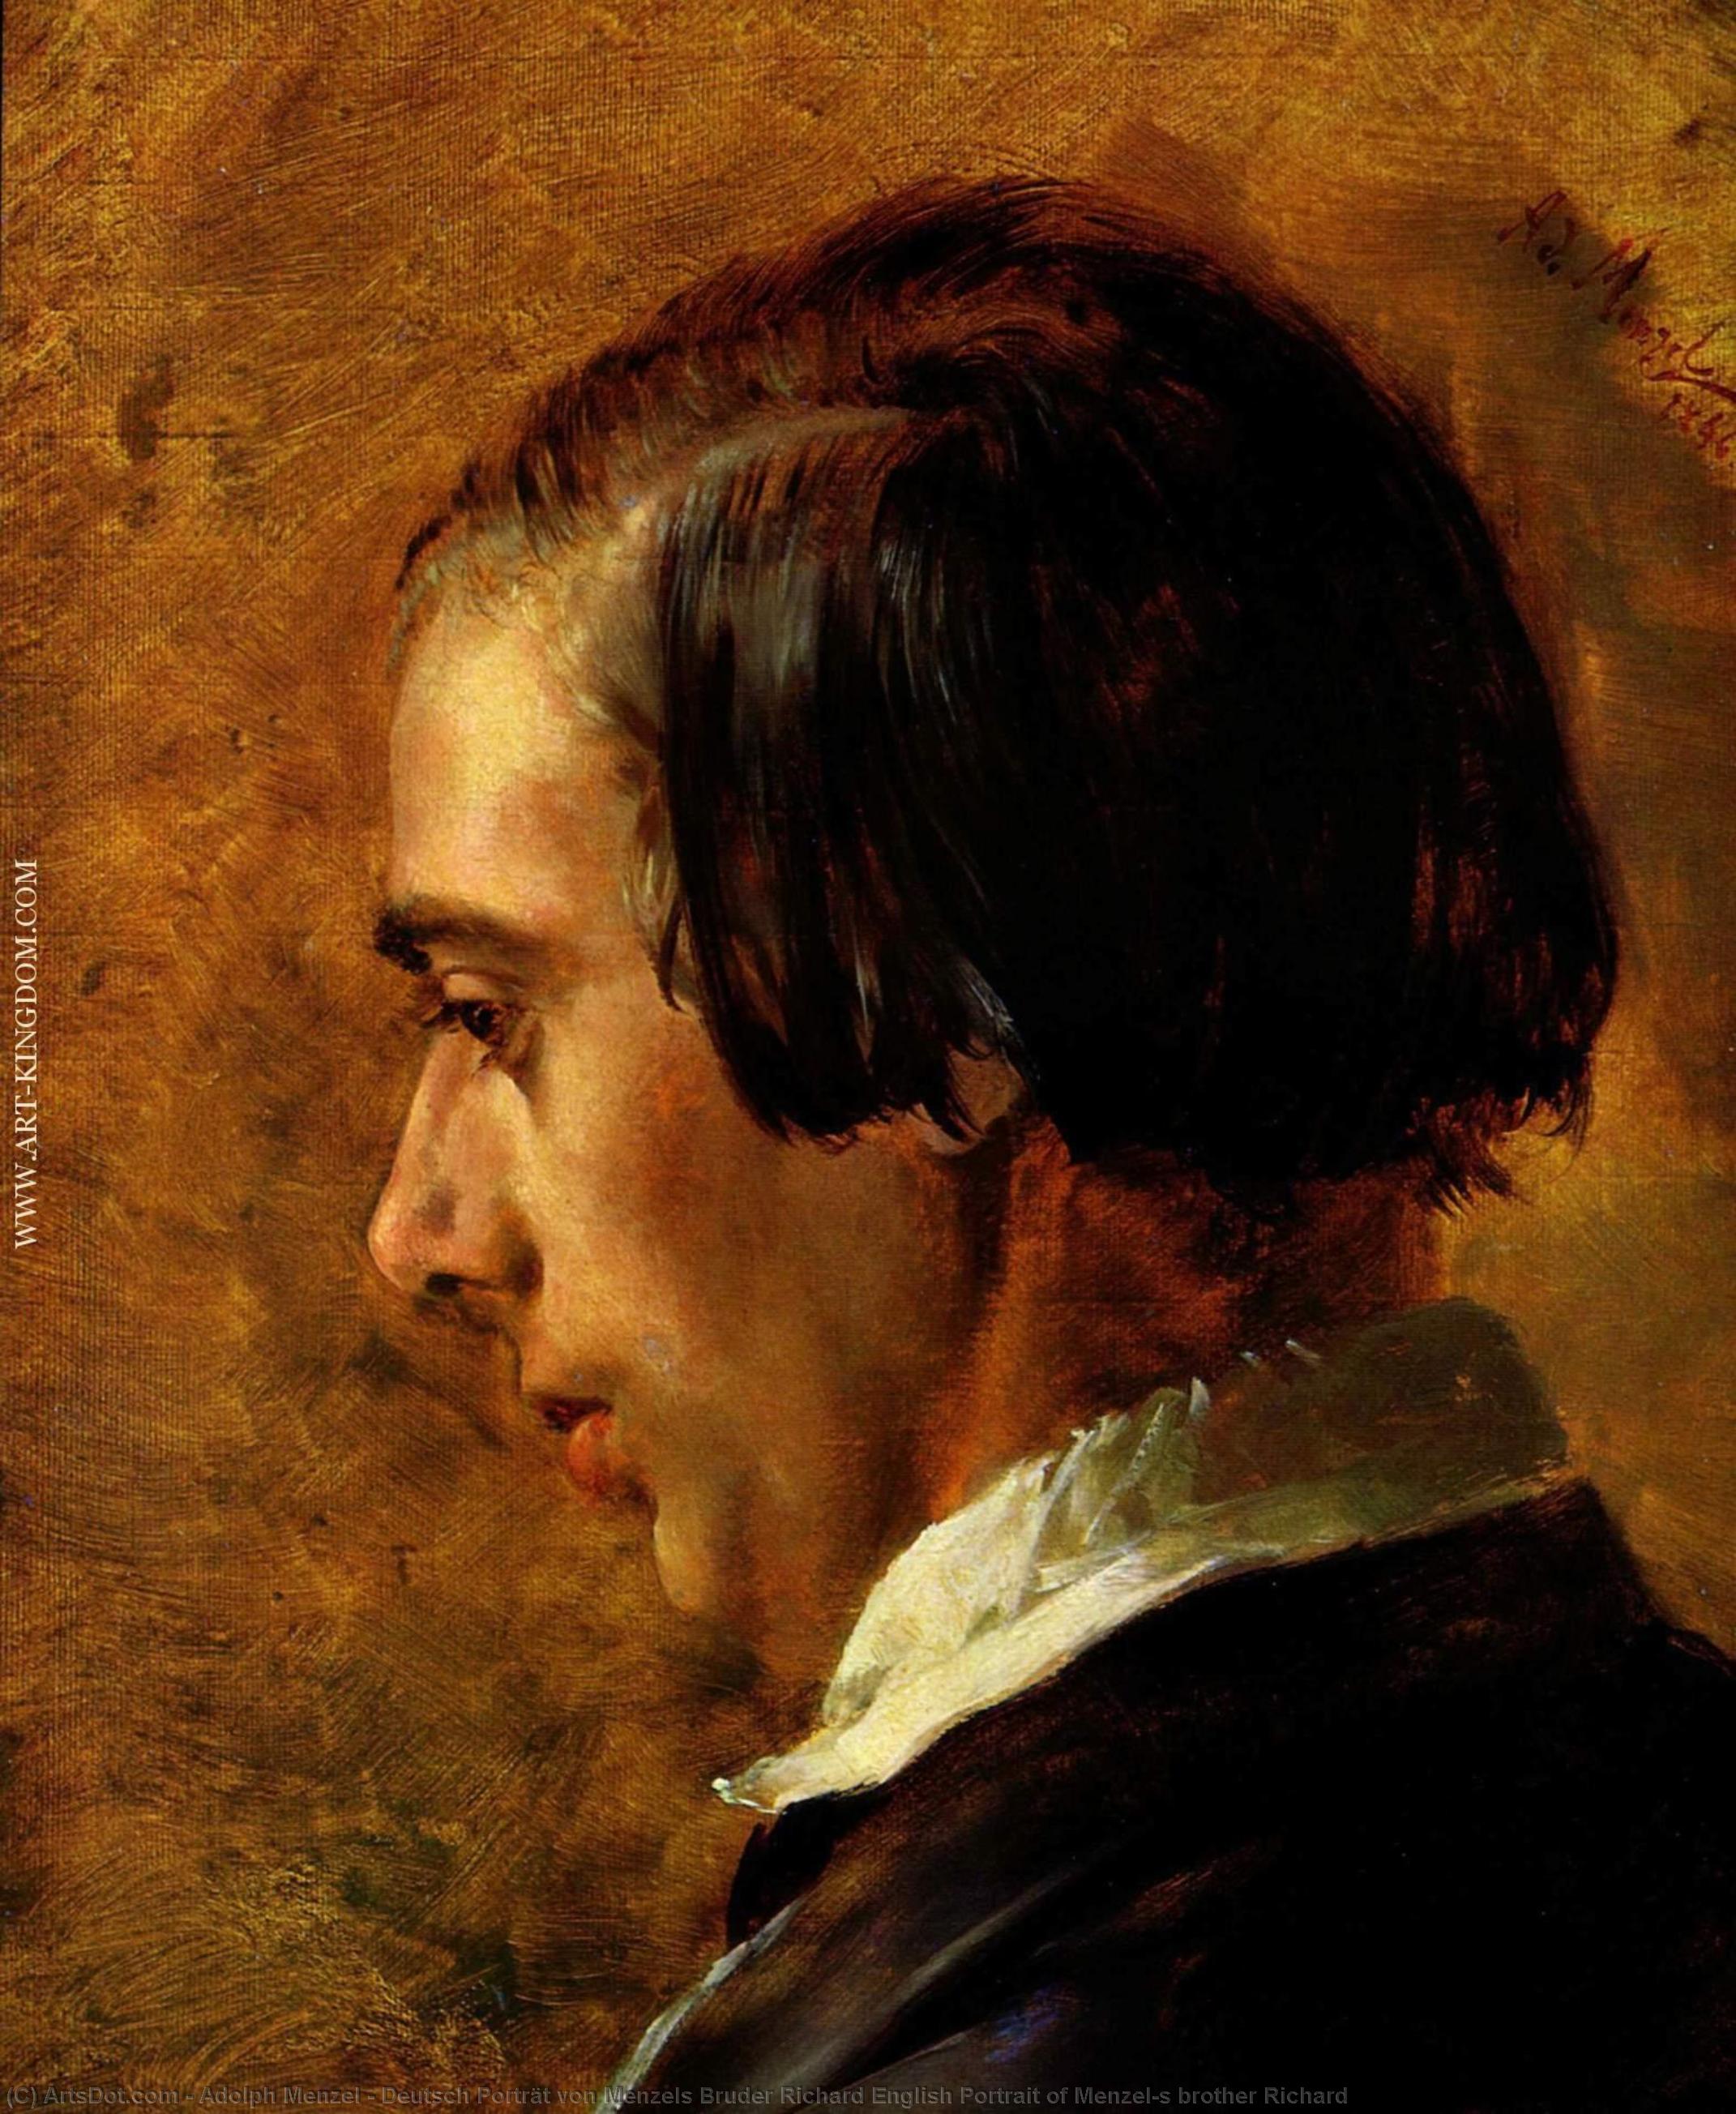 WikiOO.org - Encyclopedia of Fine Arts - Maleri, Artwork Adolph Menzel - Deutsch Porträt von Menzels Bruder Richard English Portrait of Menzel's brother Richard